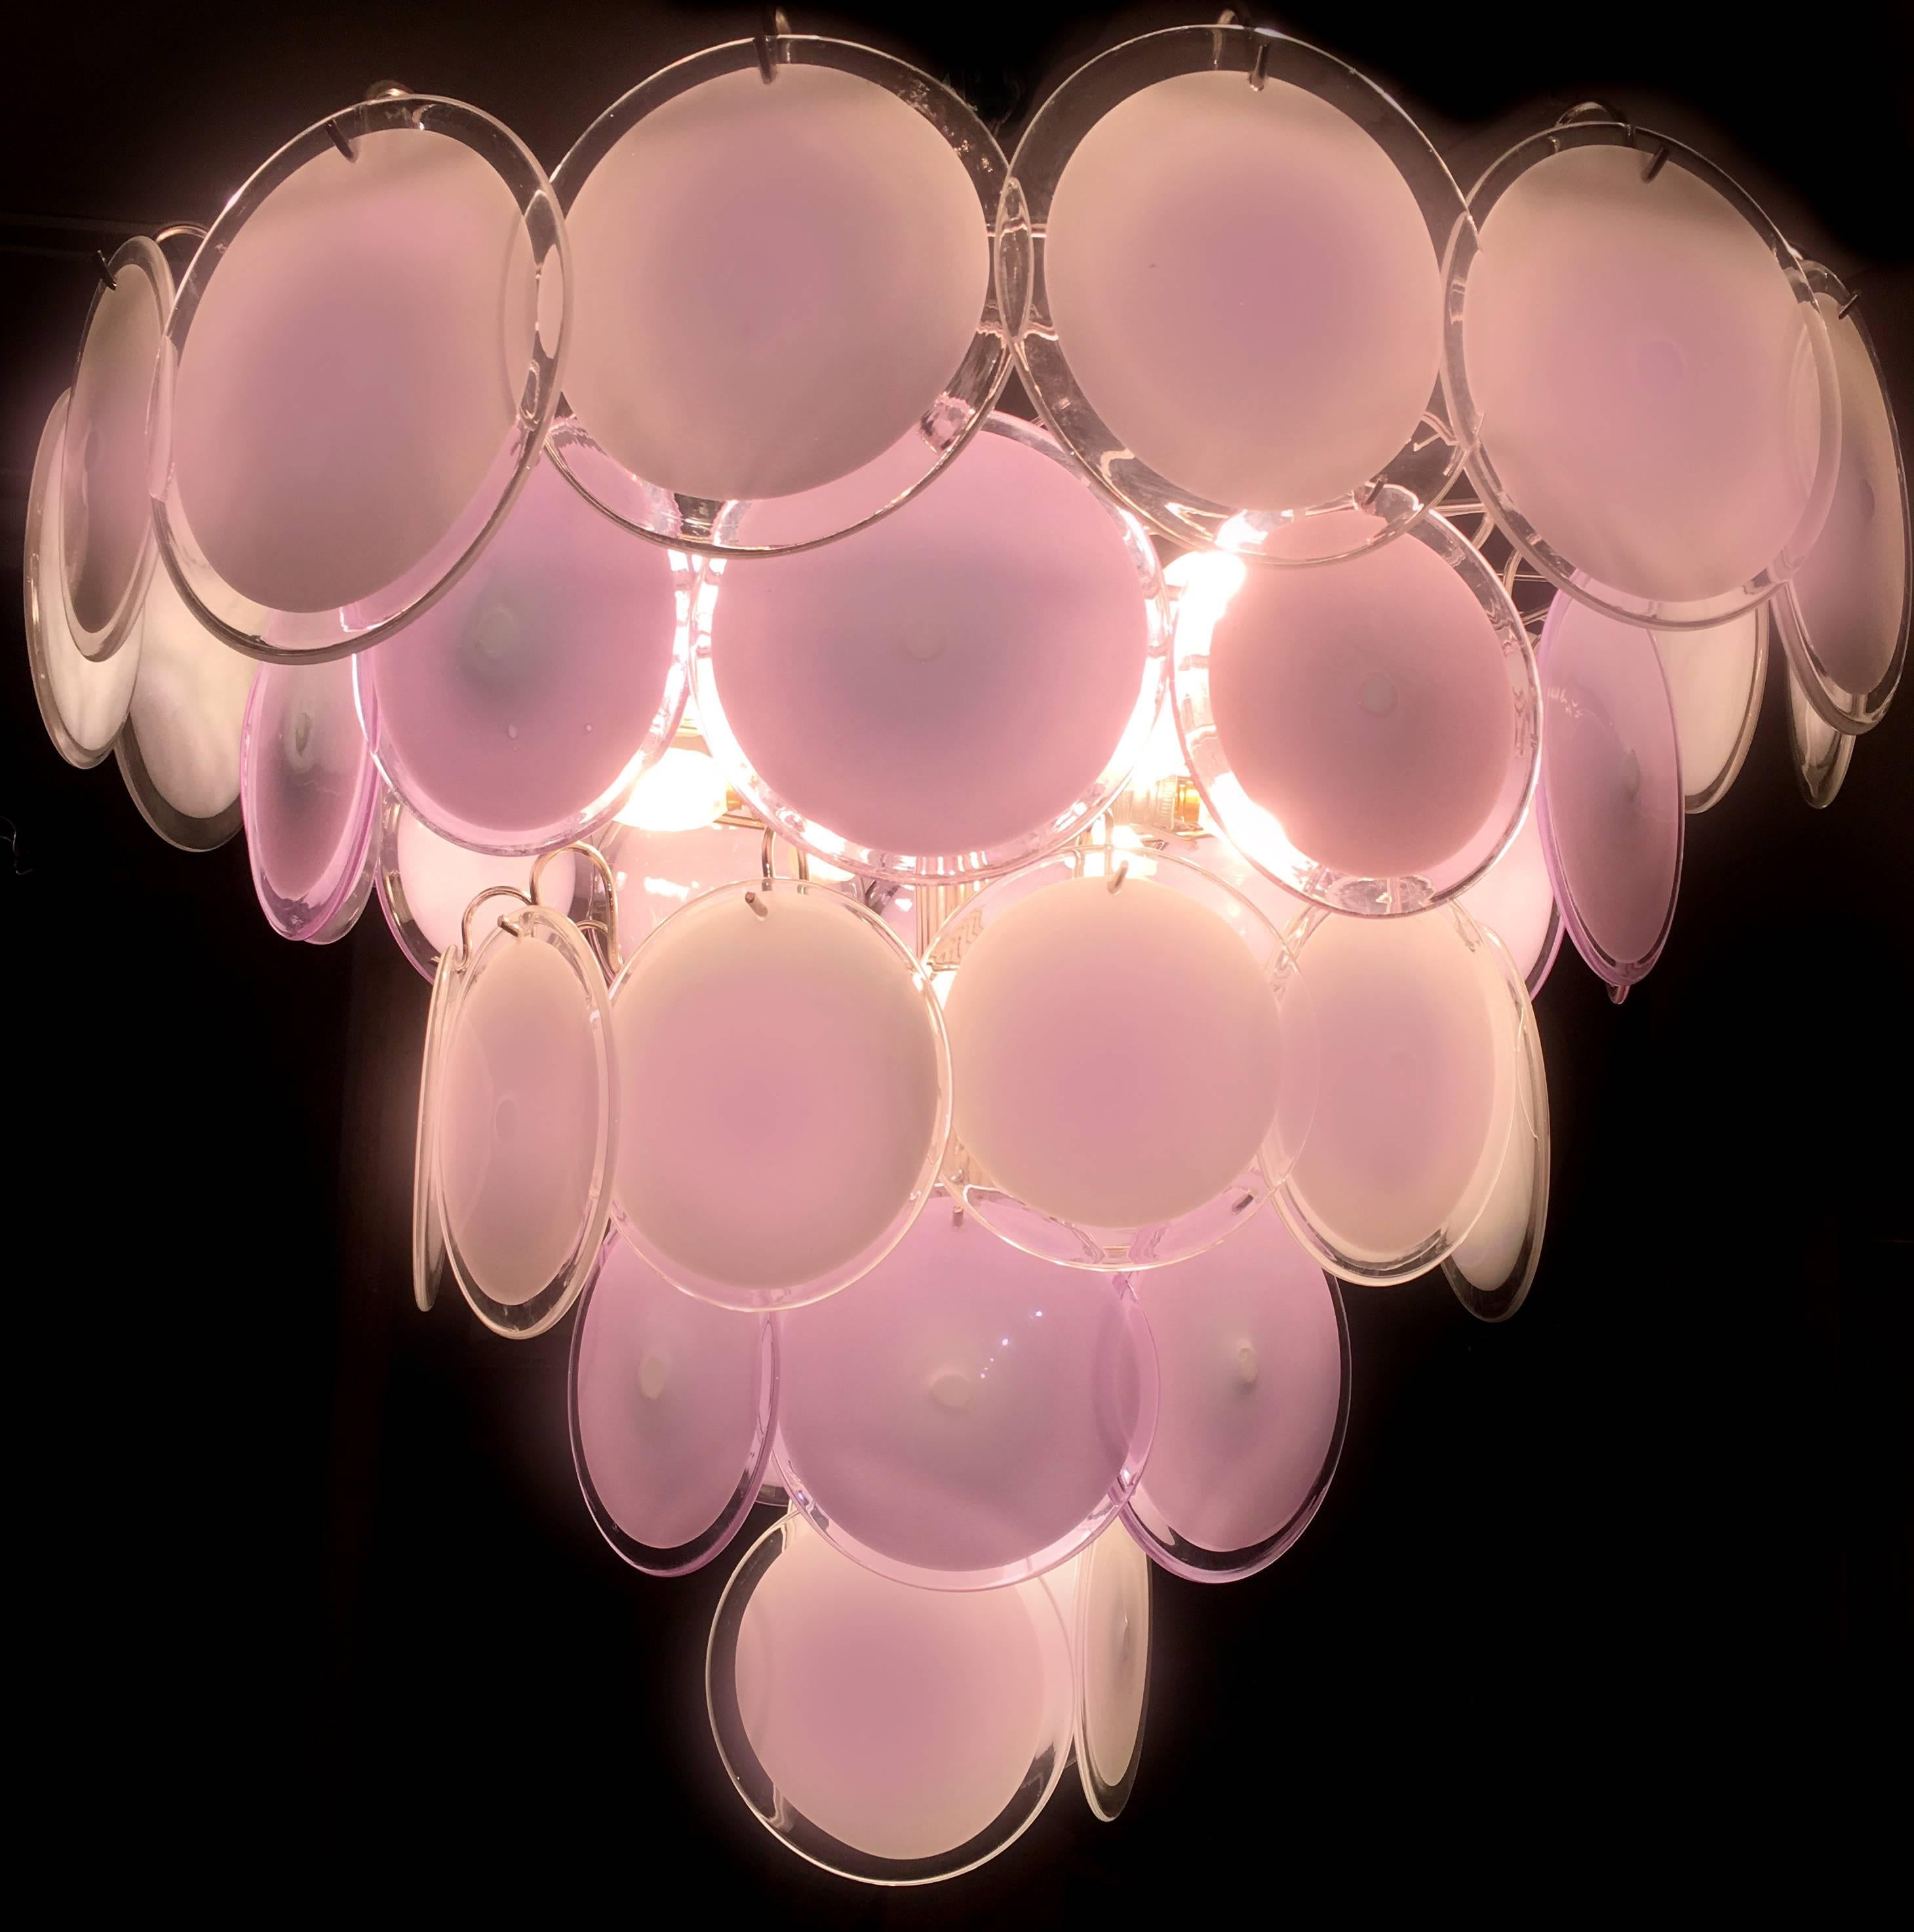 Spektakulärer Kronleuchter von Vistosi aus 50 rosa Murano-Scheiben.
16 Glühbirnen E 14. Wir können für Ihr Land Standards verdrahten.
Erhältlich auch ein Paar kleine 24-Scheiben-Kronleuchter und vier Paar Wandleuchten.